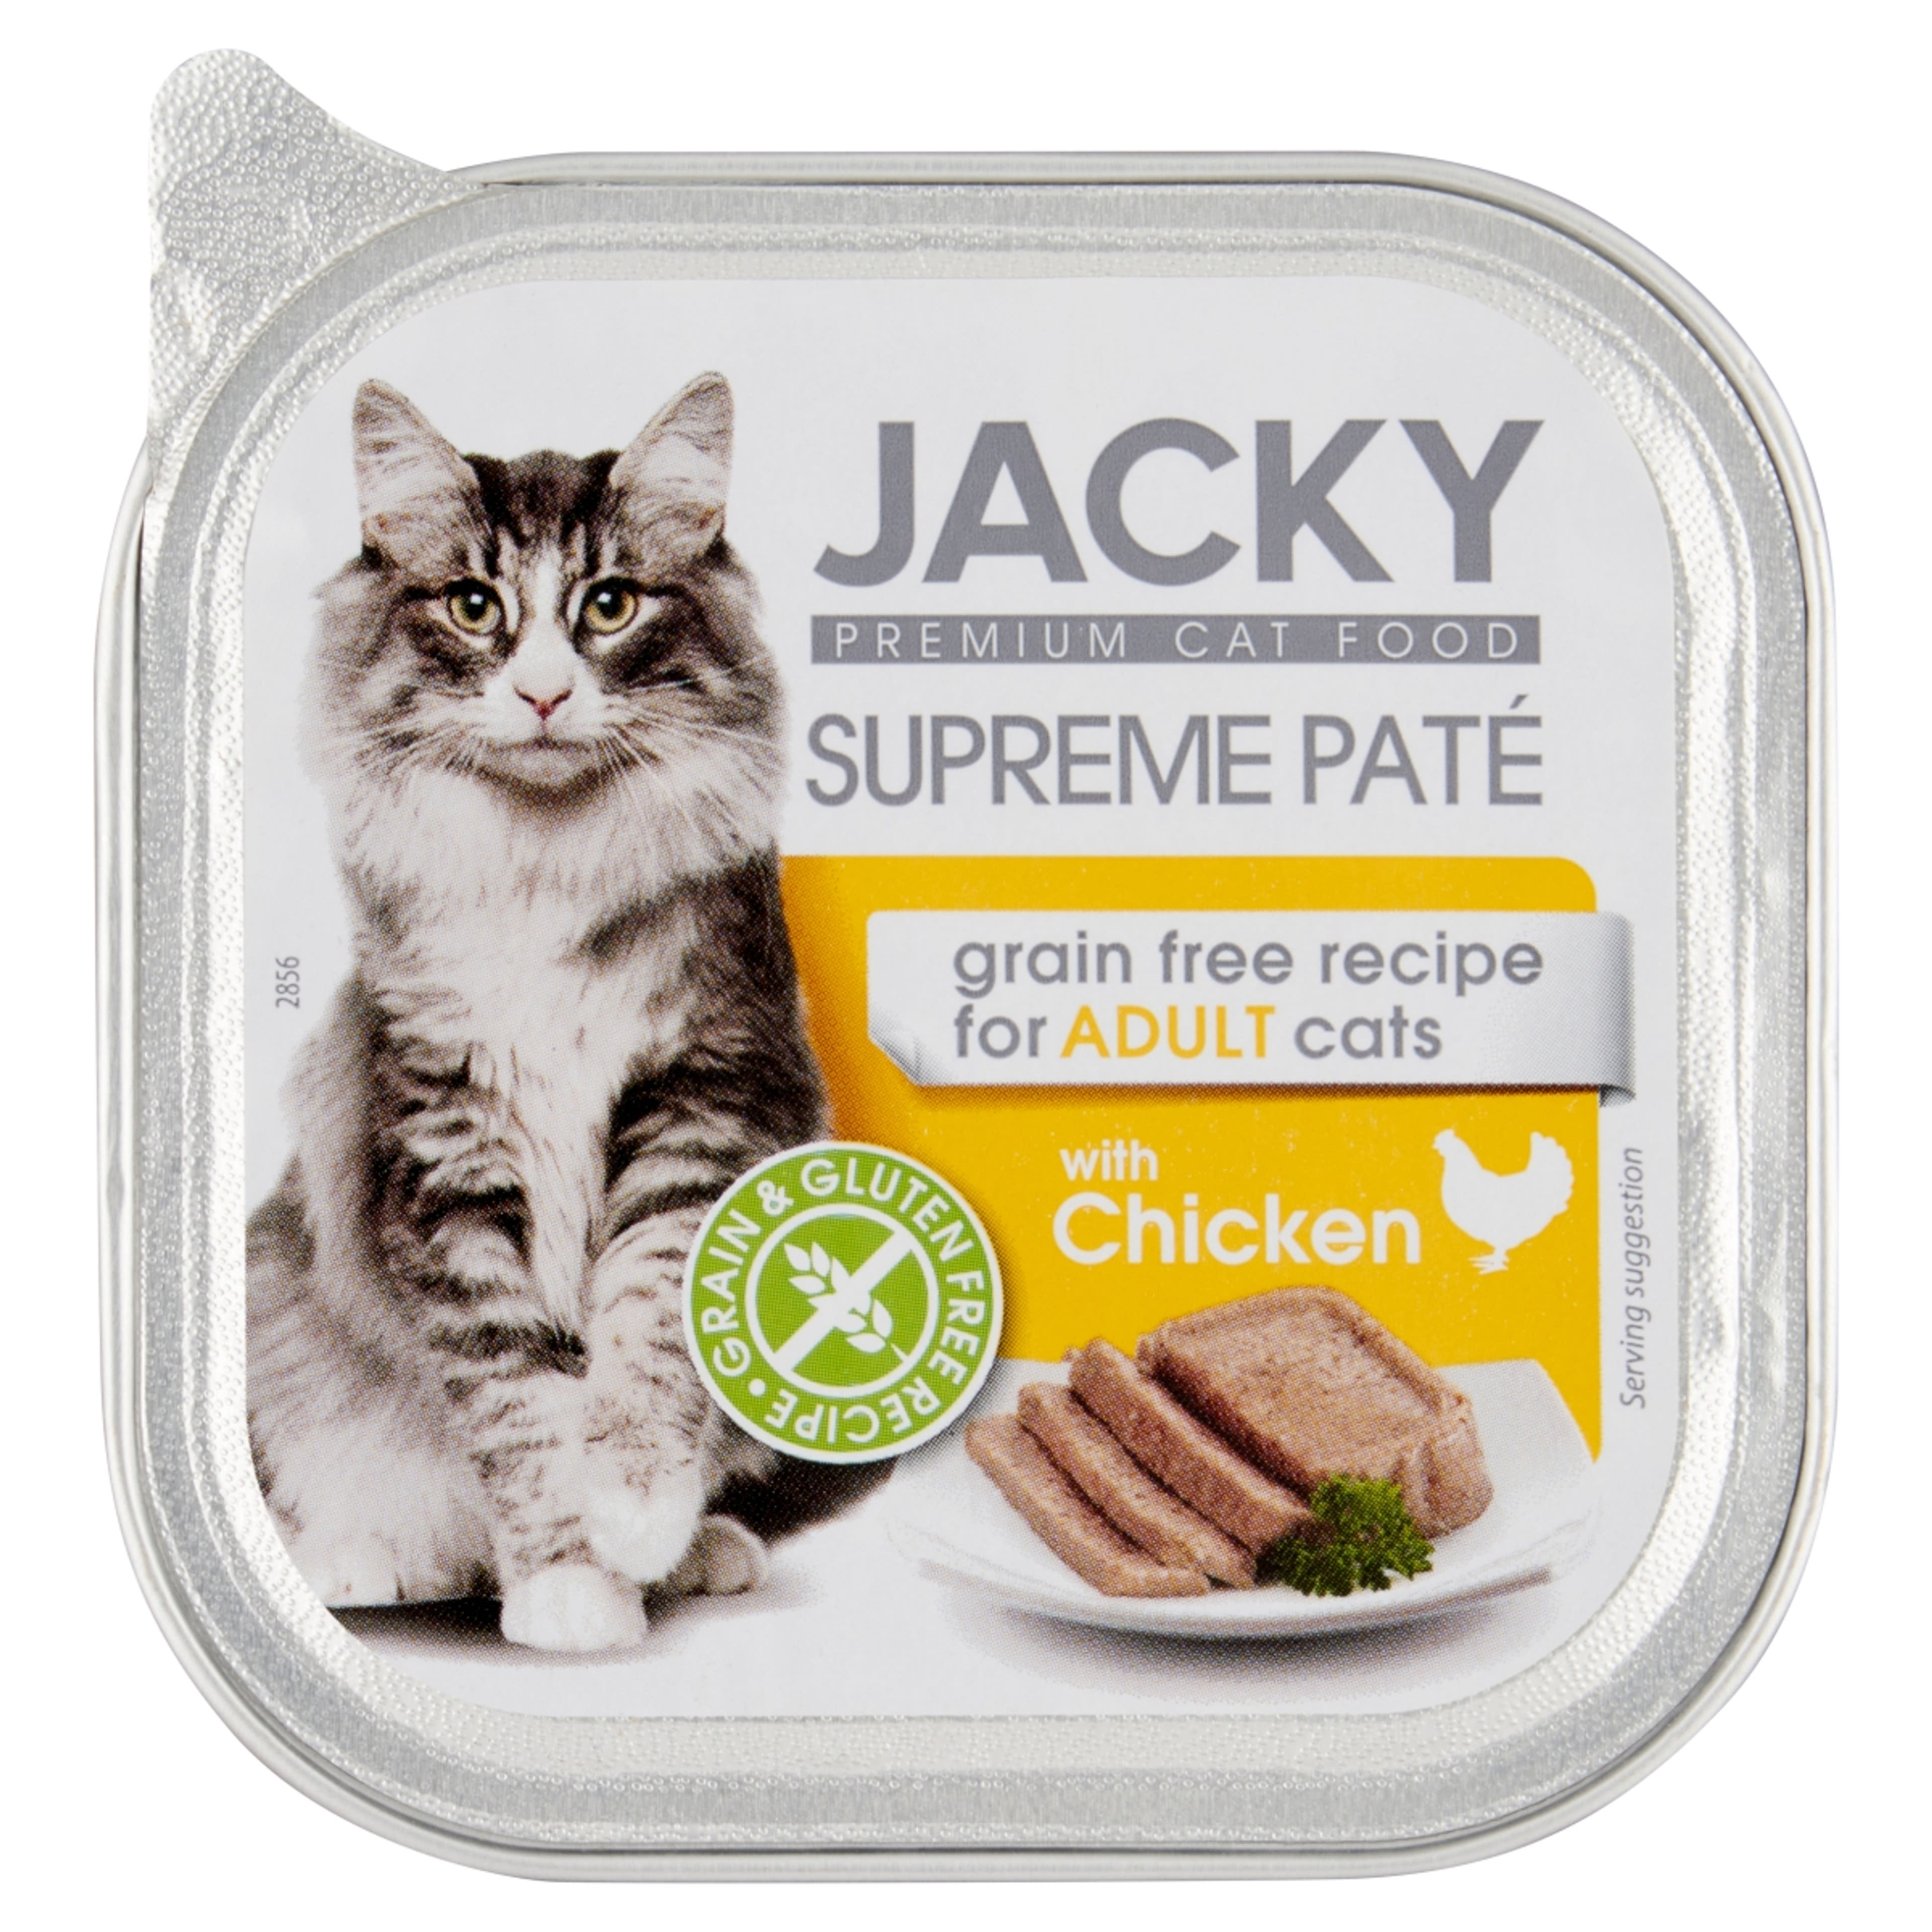 Jacky Supreme alutál pástétom macskáknak csirke ízesítéssel - 100 g-1